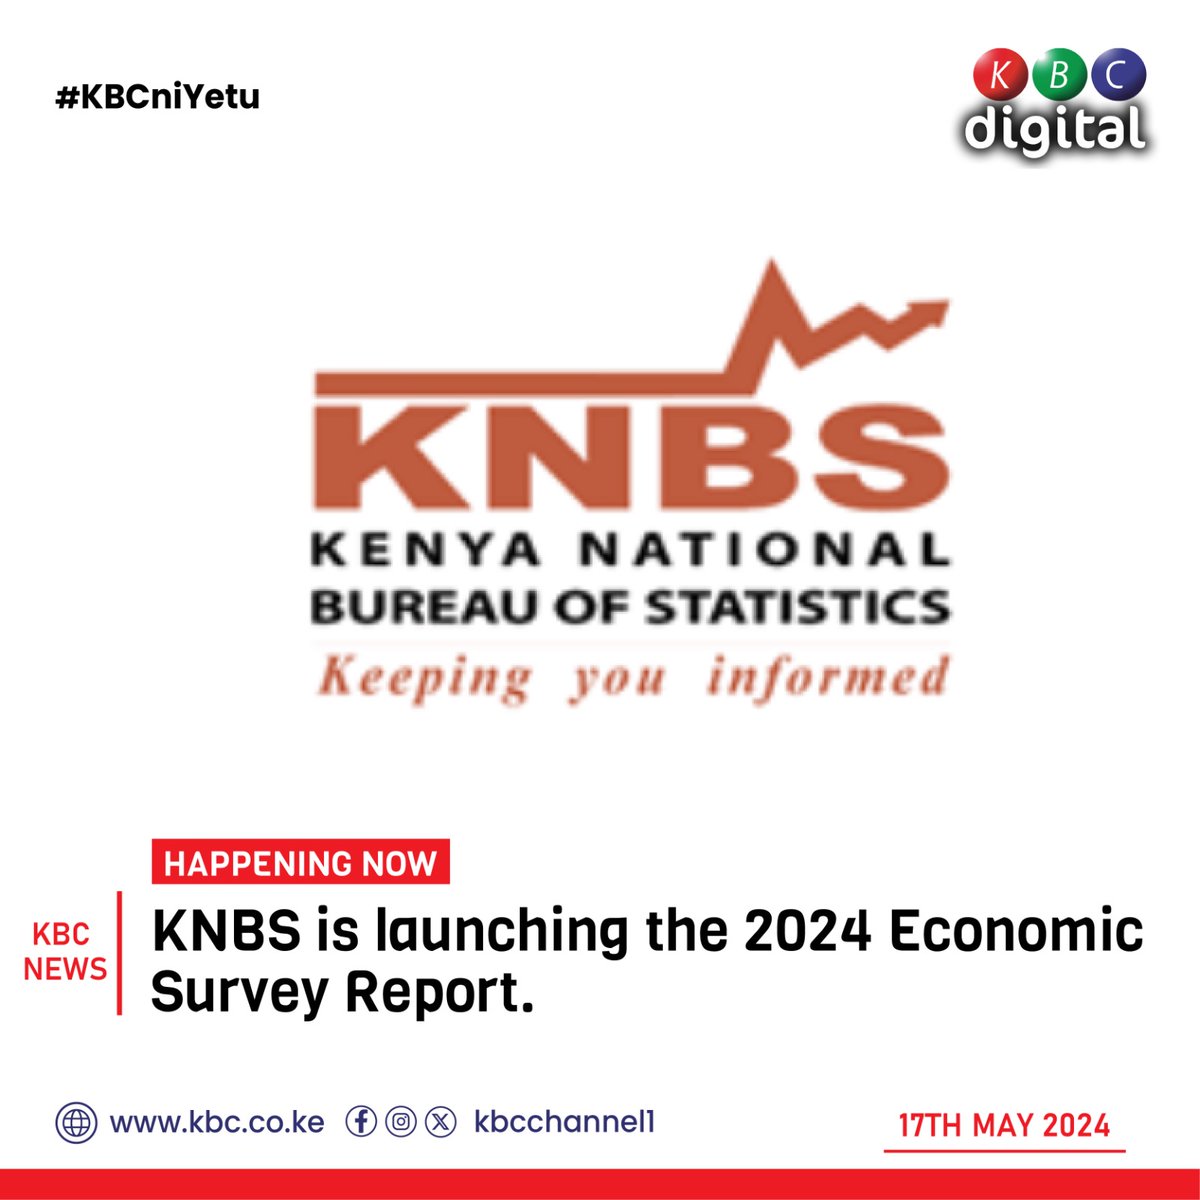 HAPPENING NOW KNBS is launching the 2024 Economic Survey Report. ^DA #Amacheni #Mumabwibwi #IngoFM